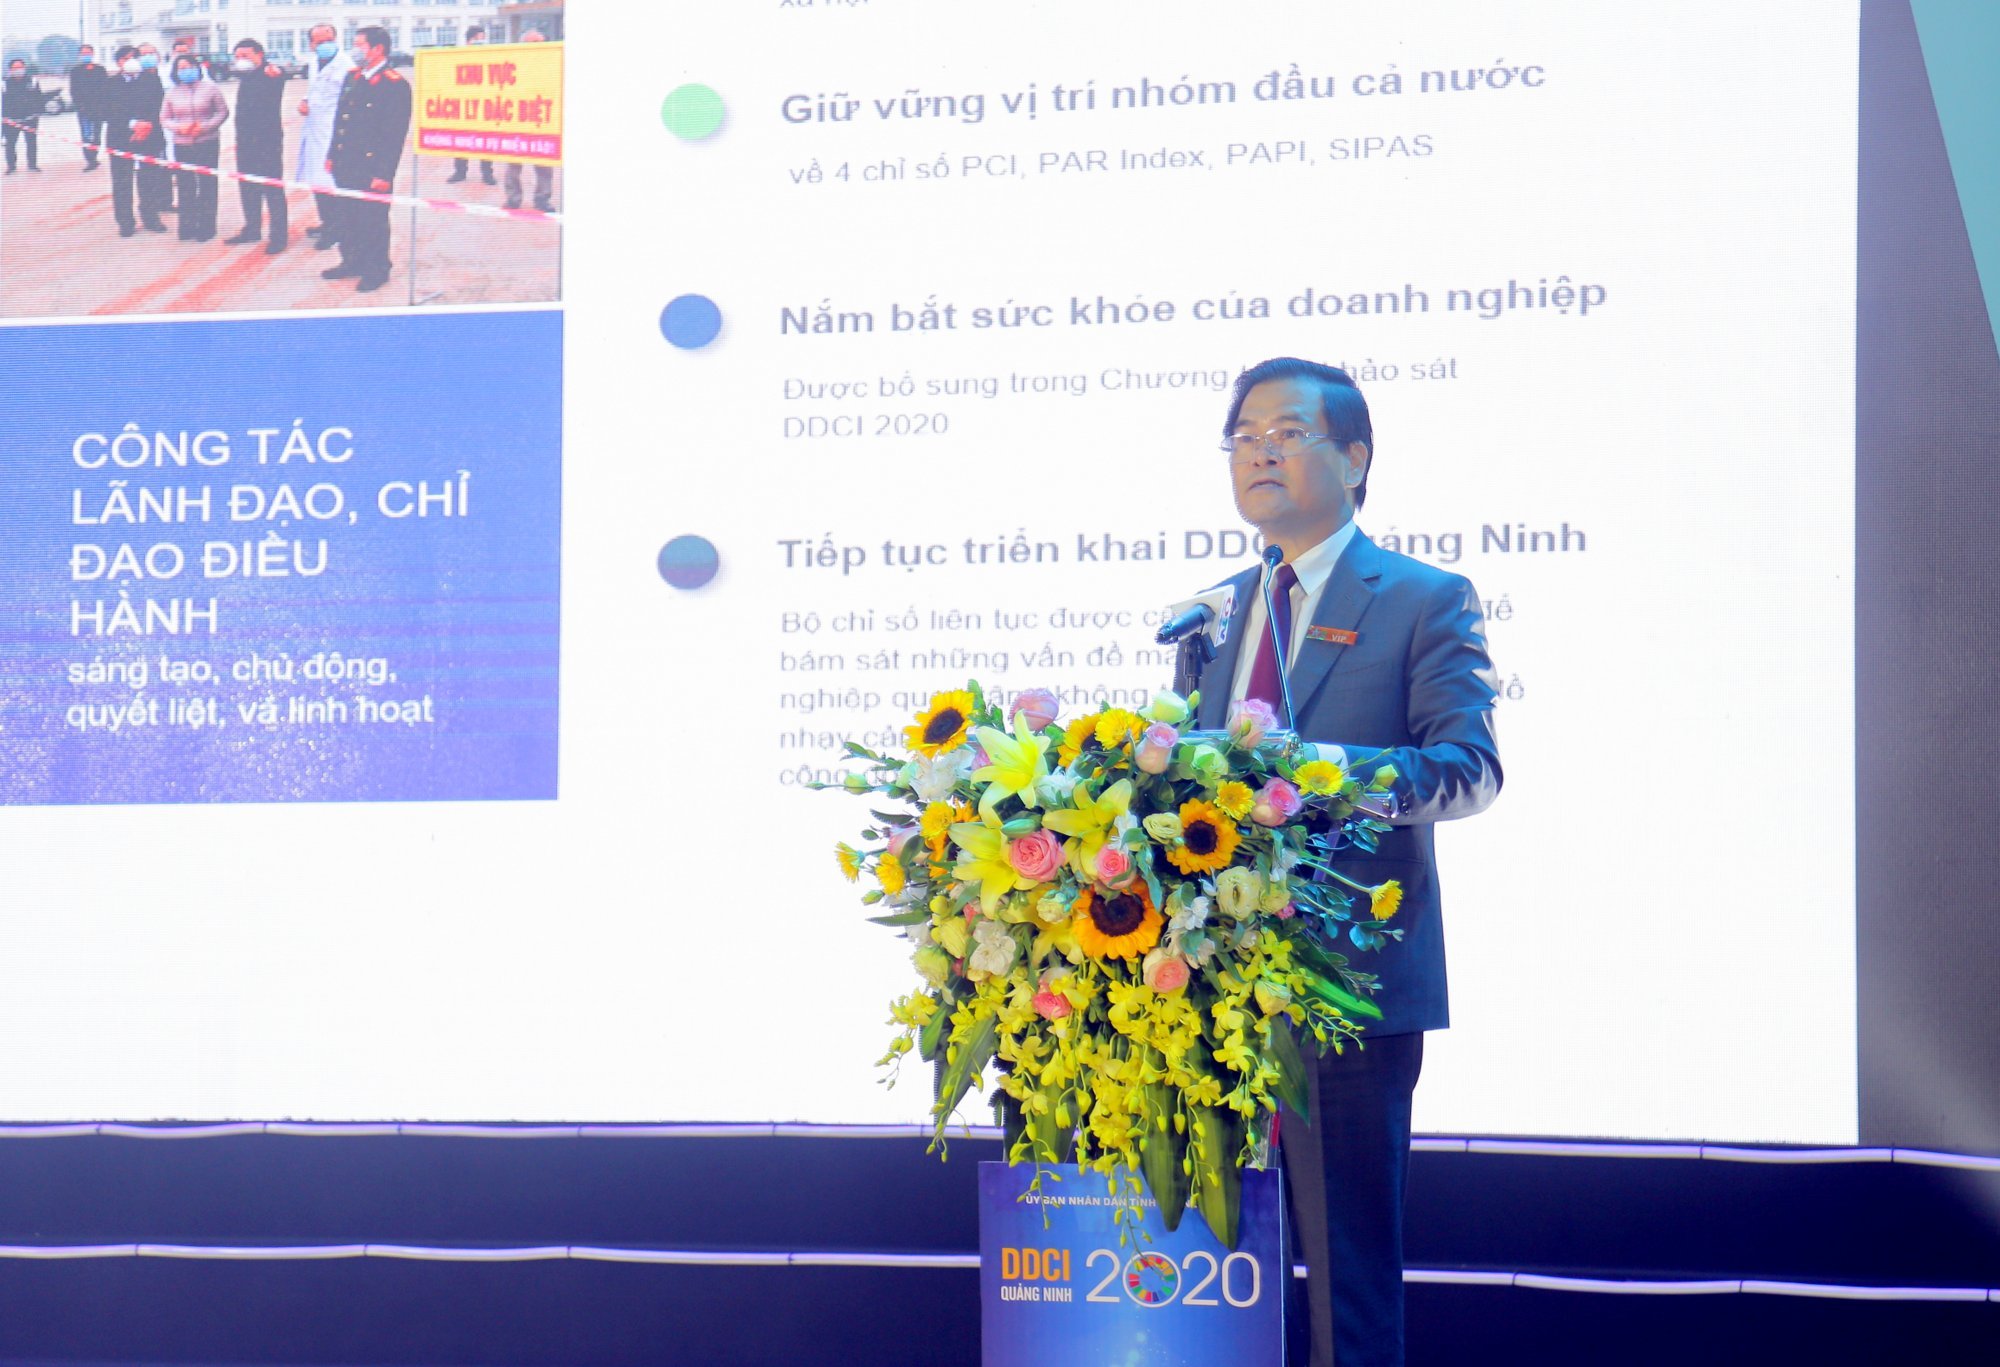 Đồng chí Bùi Văn Khắng, Phó Chủ tịch UBND tỉnh, phát biểu khai mạc hội nghị.